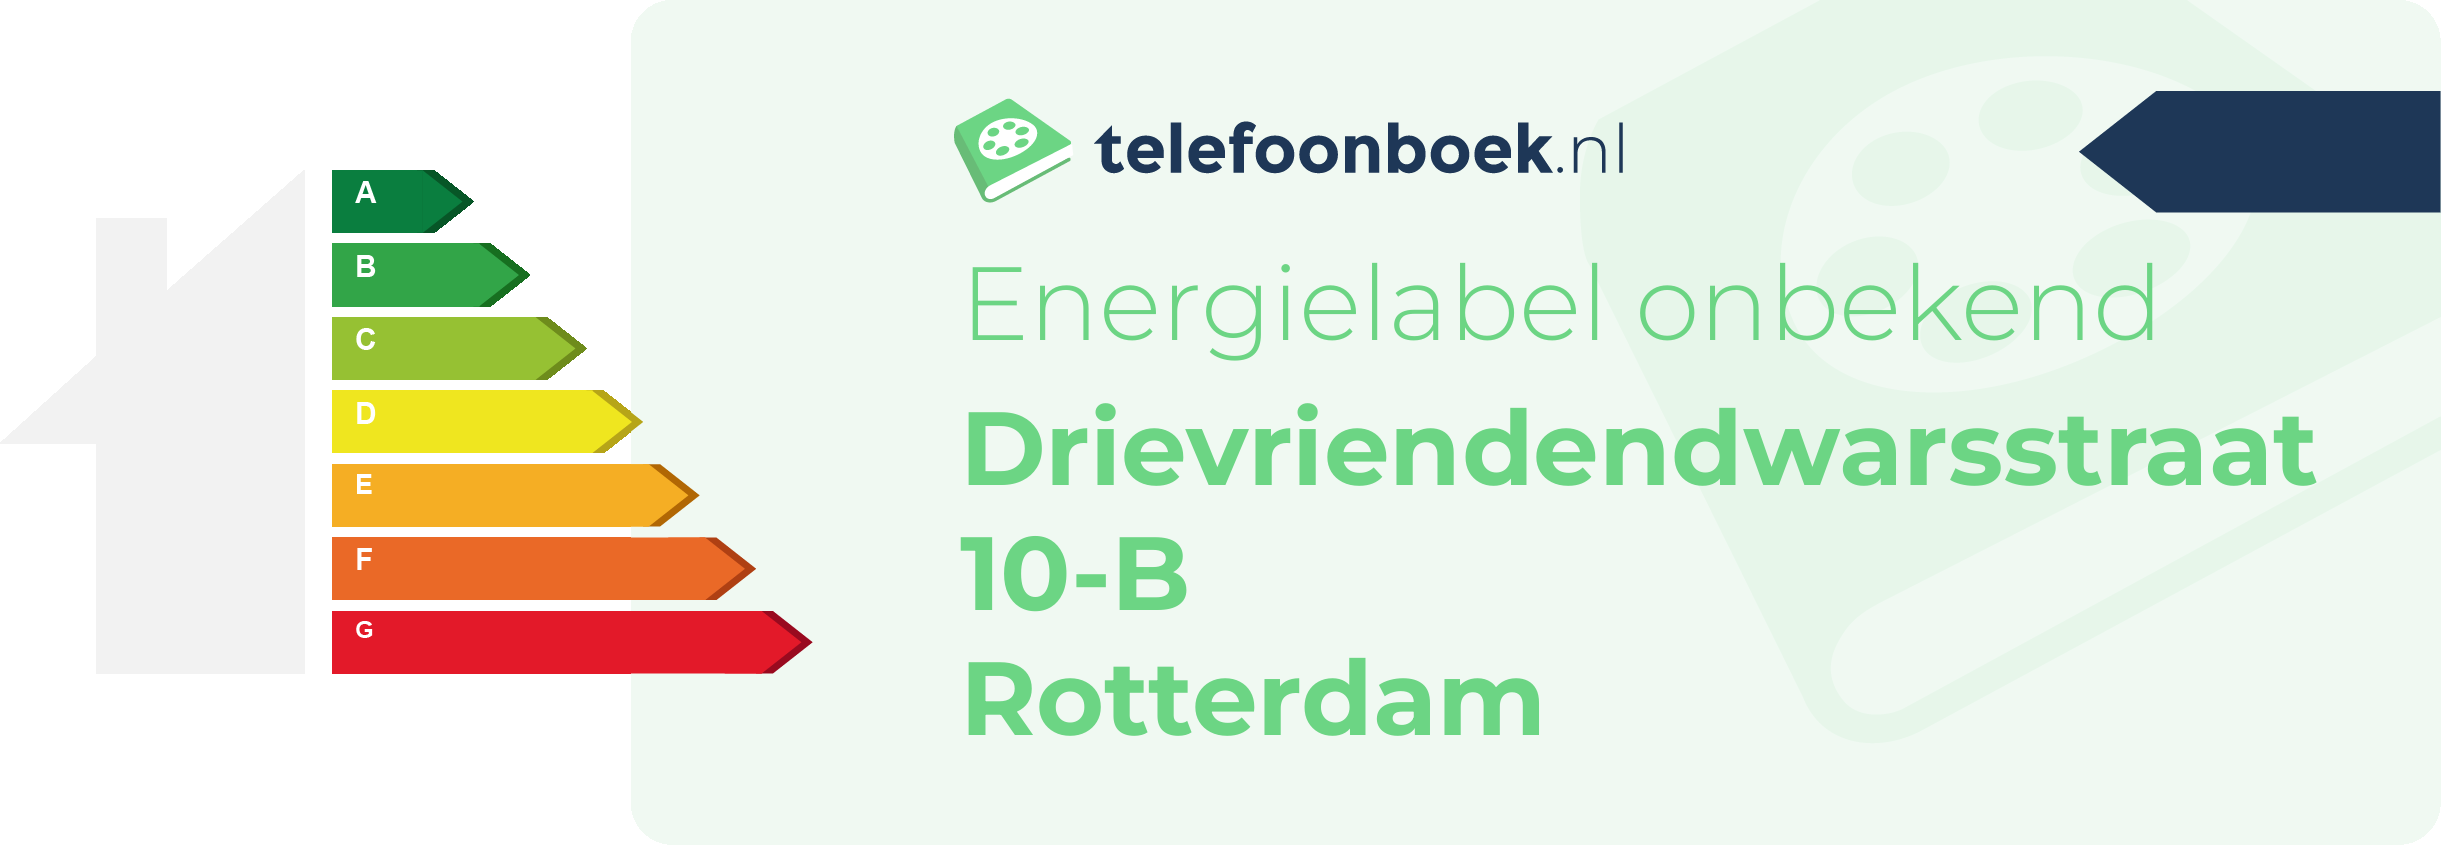 Energielabel Drievriendendwarsstraat 10-B Rotterdam